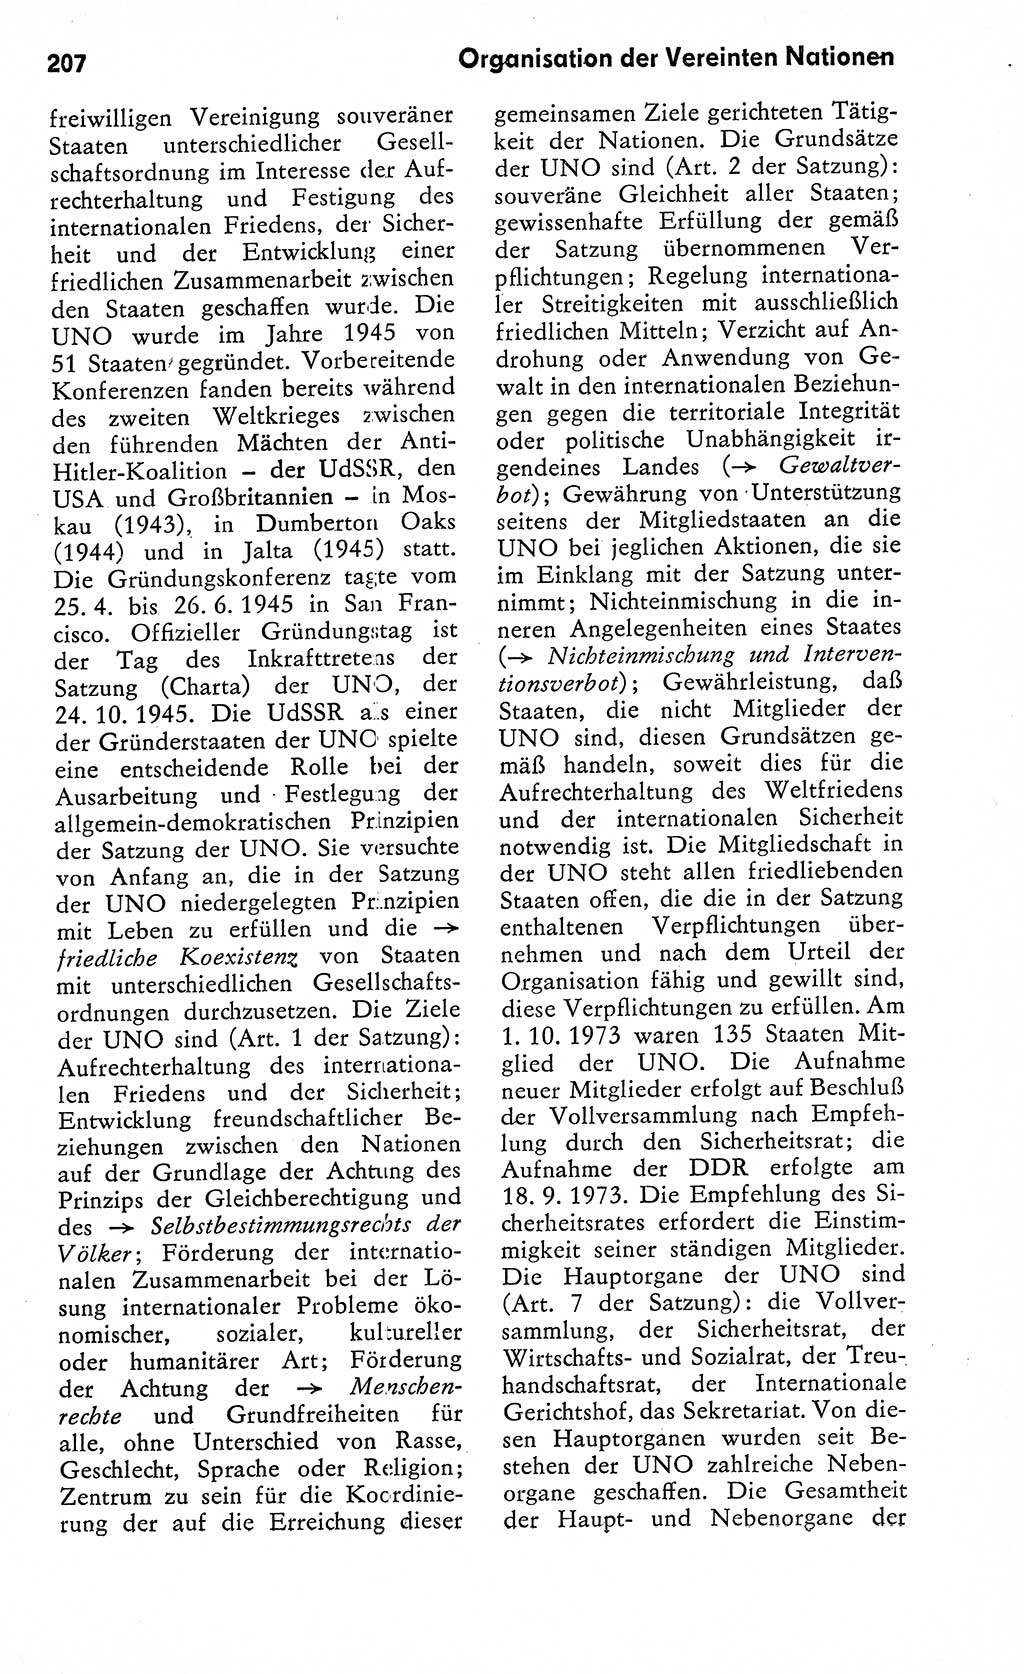 Wörterbuch zum sozialistischen Staat [Deutsche Demokratische Republik (DDR)] 1974, Seite 207 (Wb. soz. St. DDR 1974, S. 207)